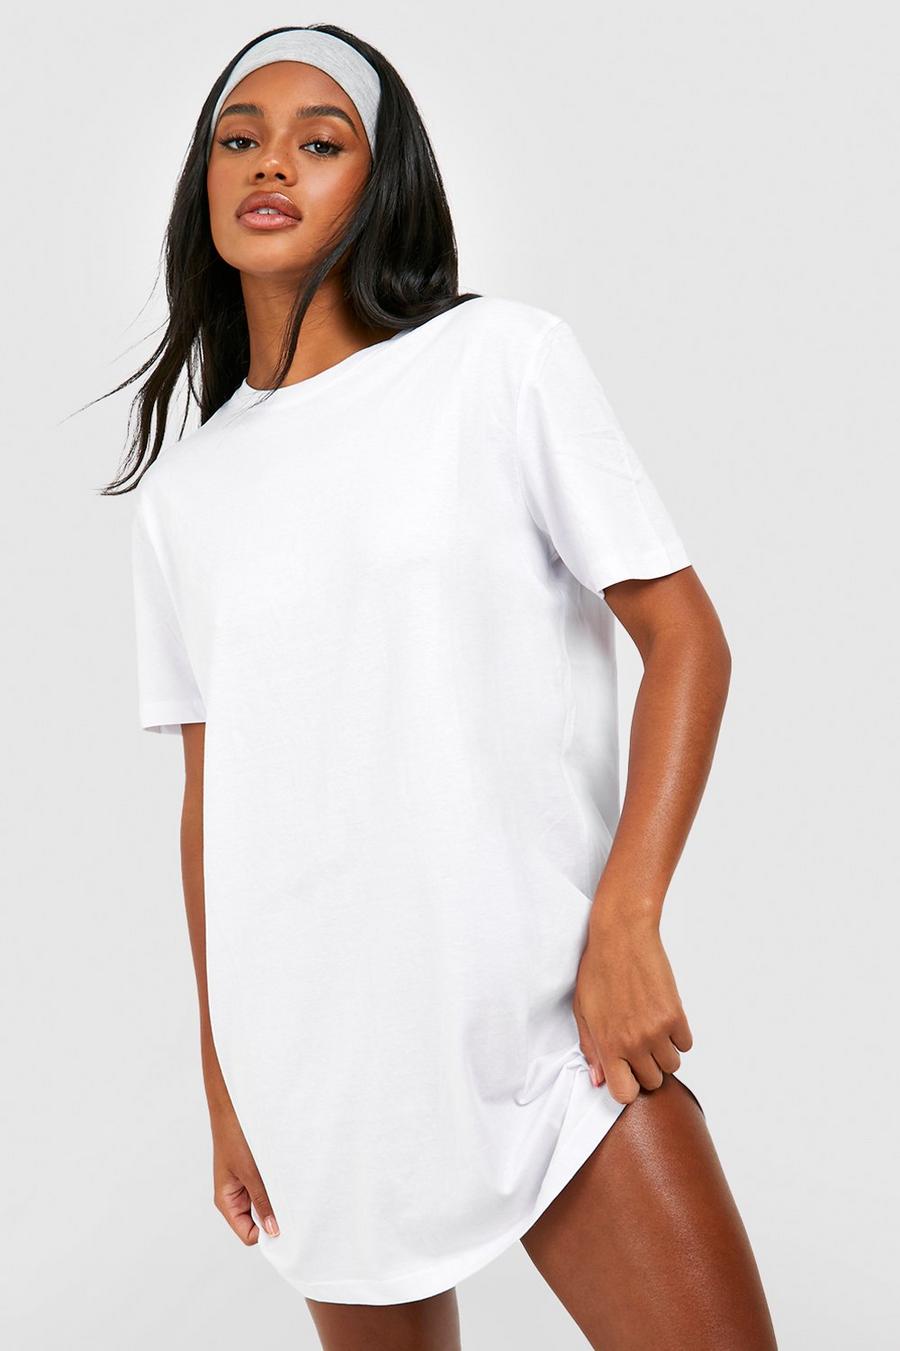 White Basic T-shirt Dress